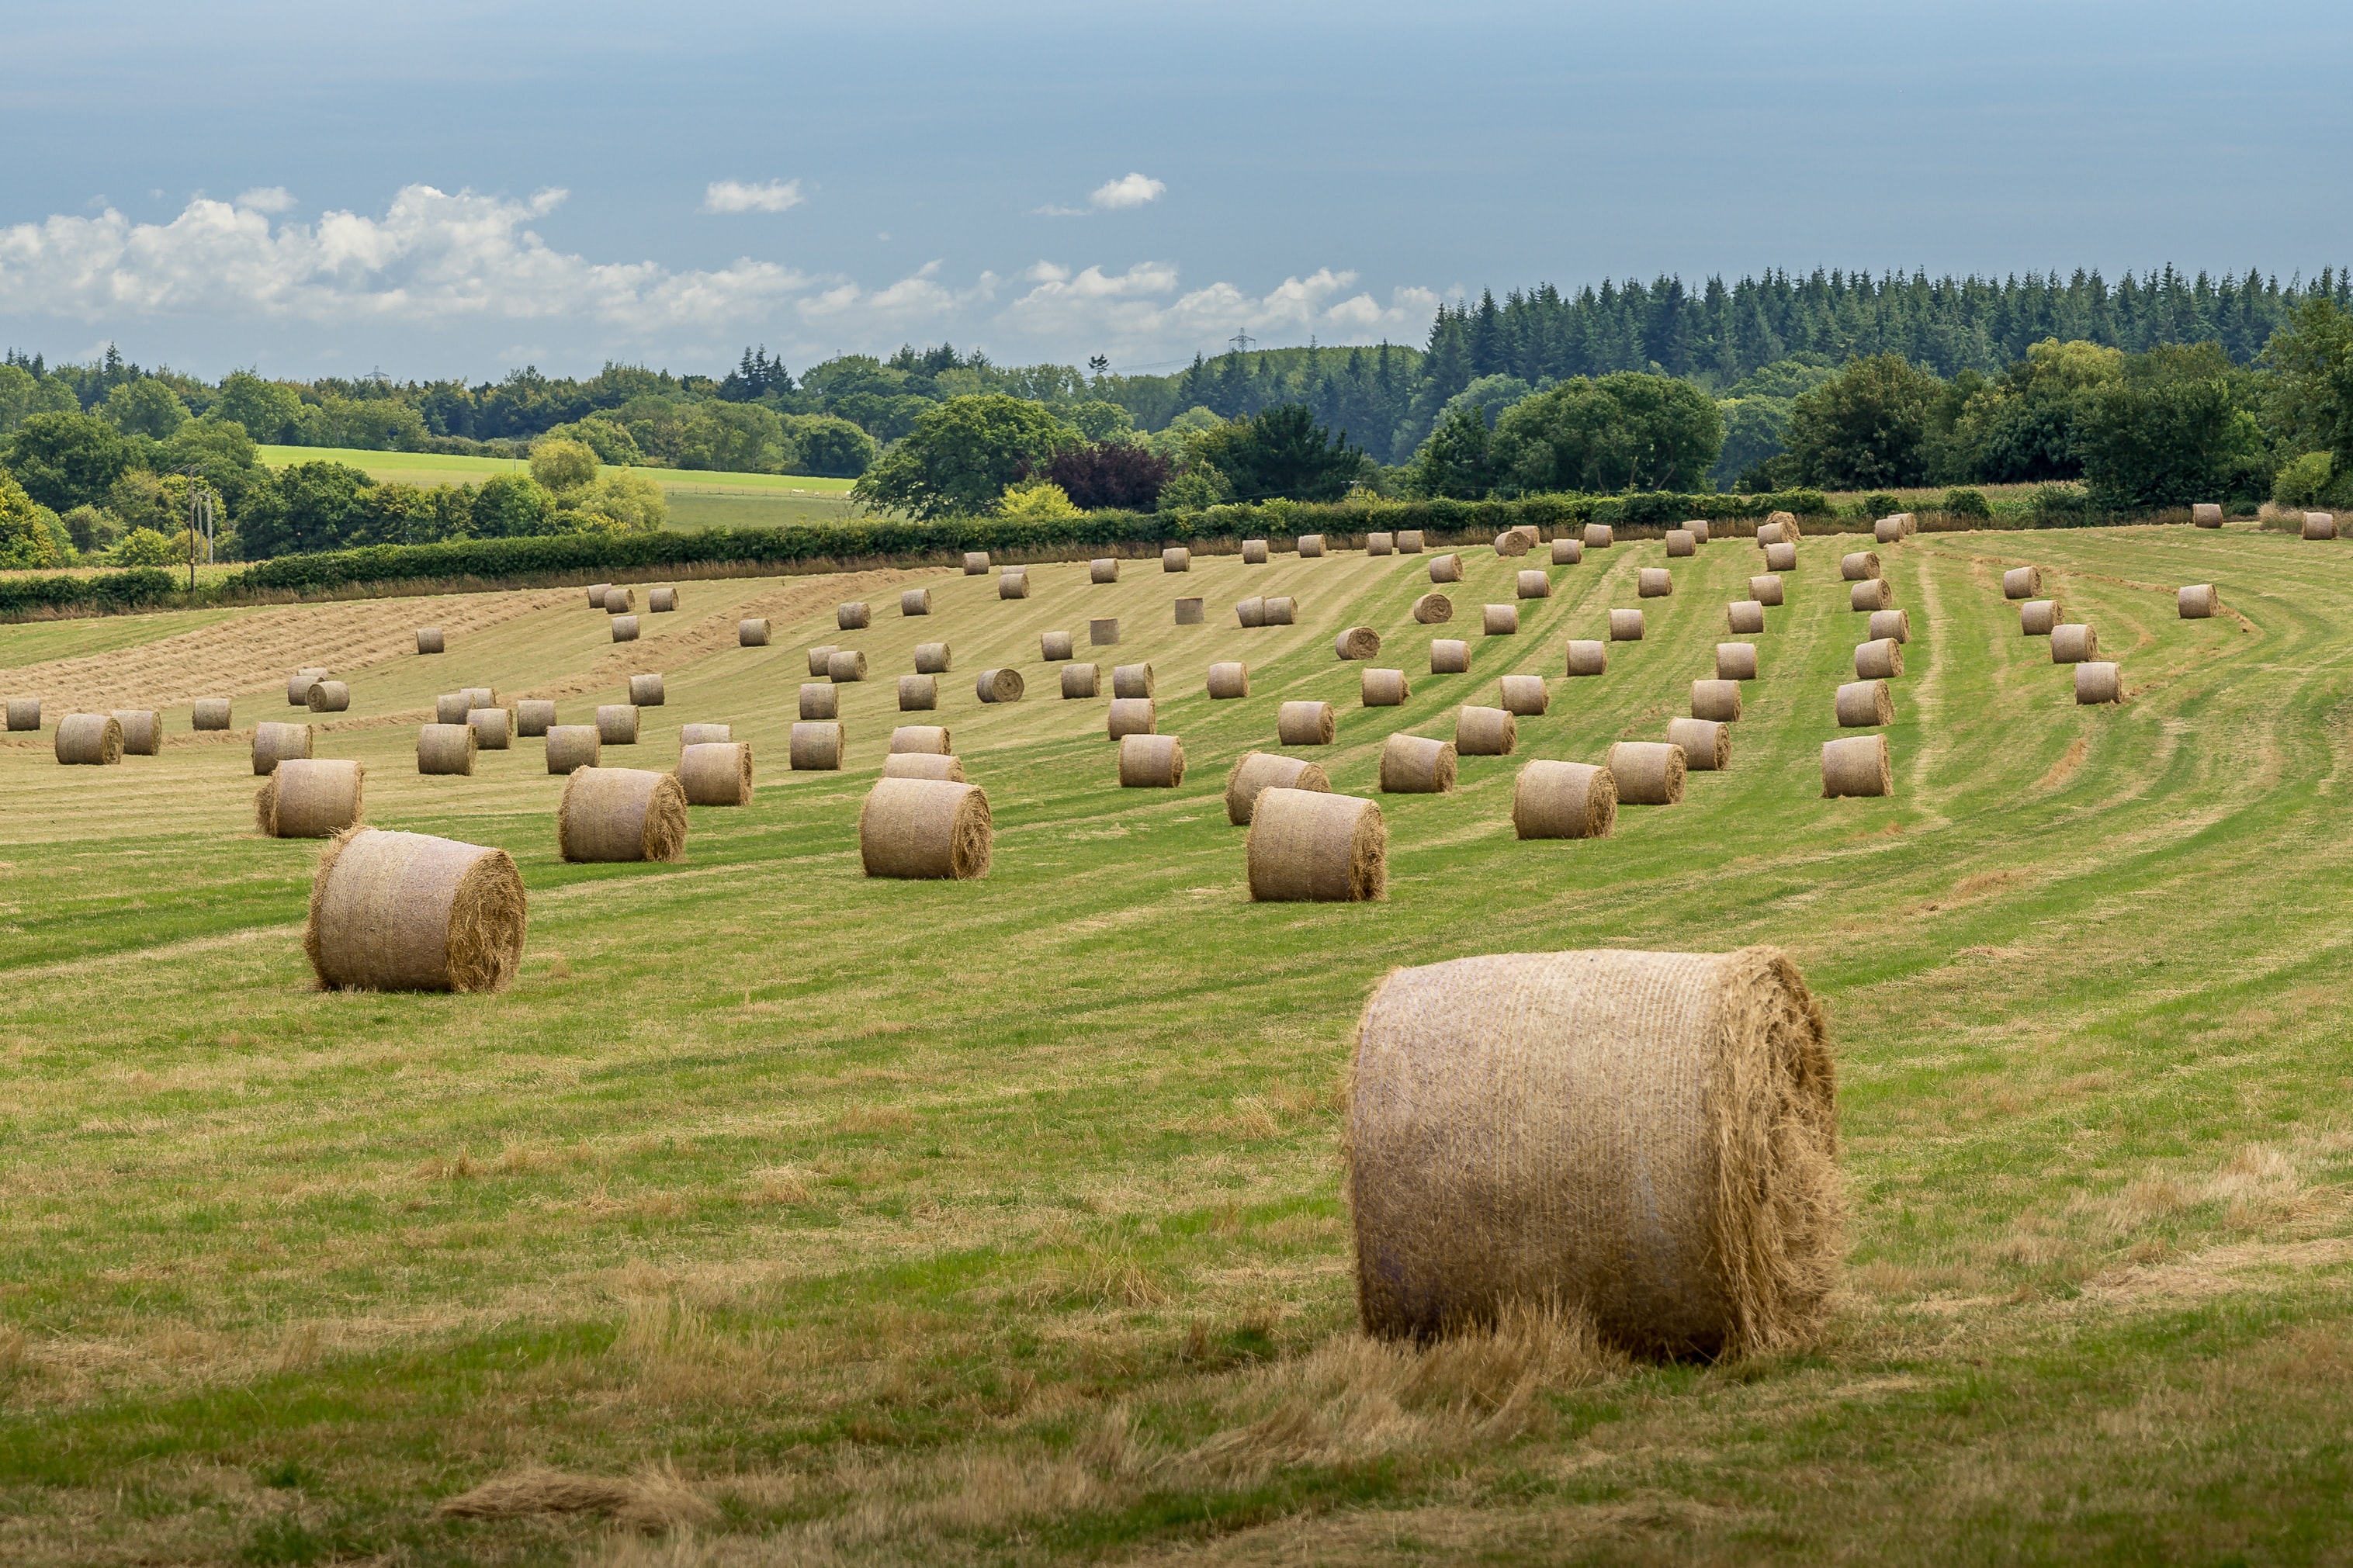 Field of Bales of Hay